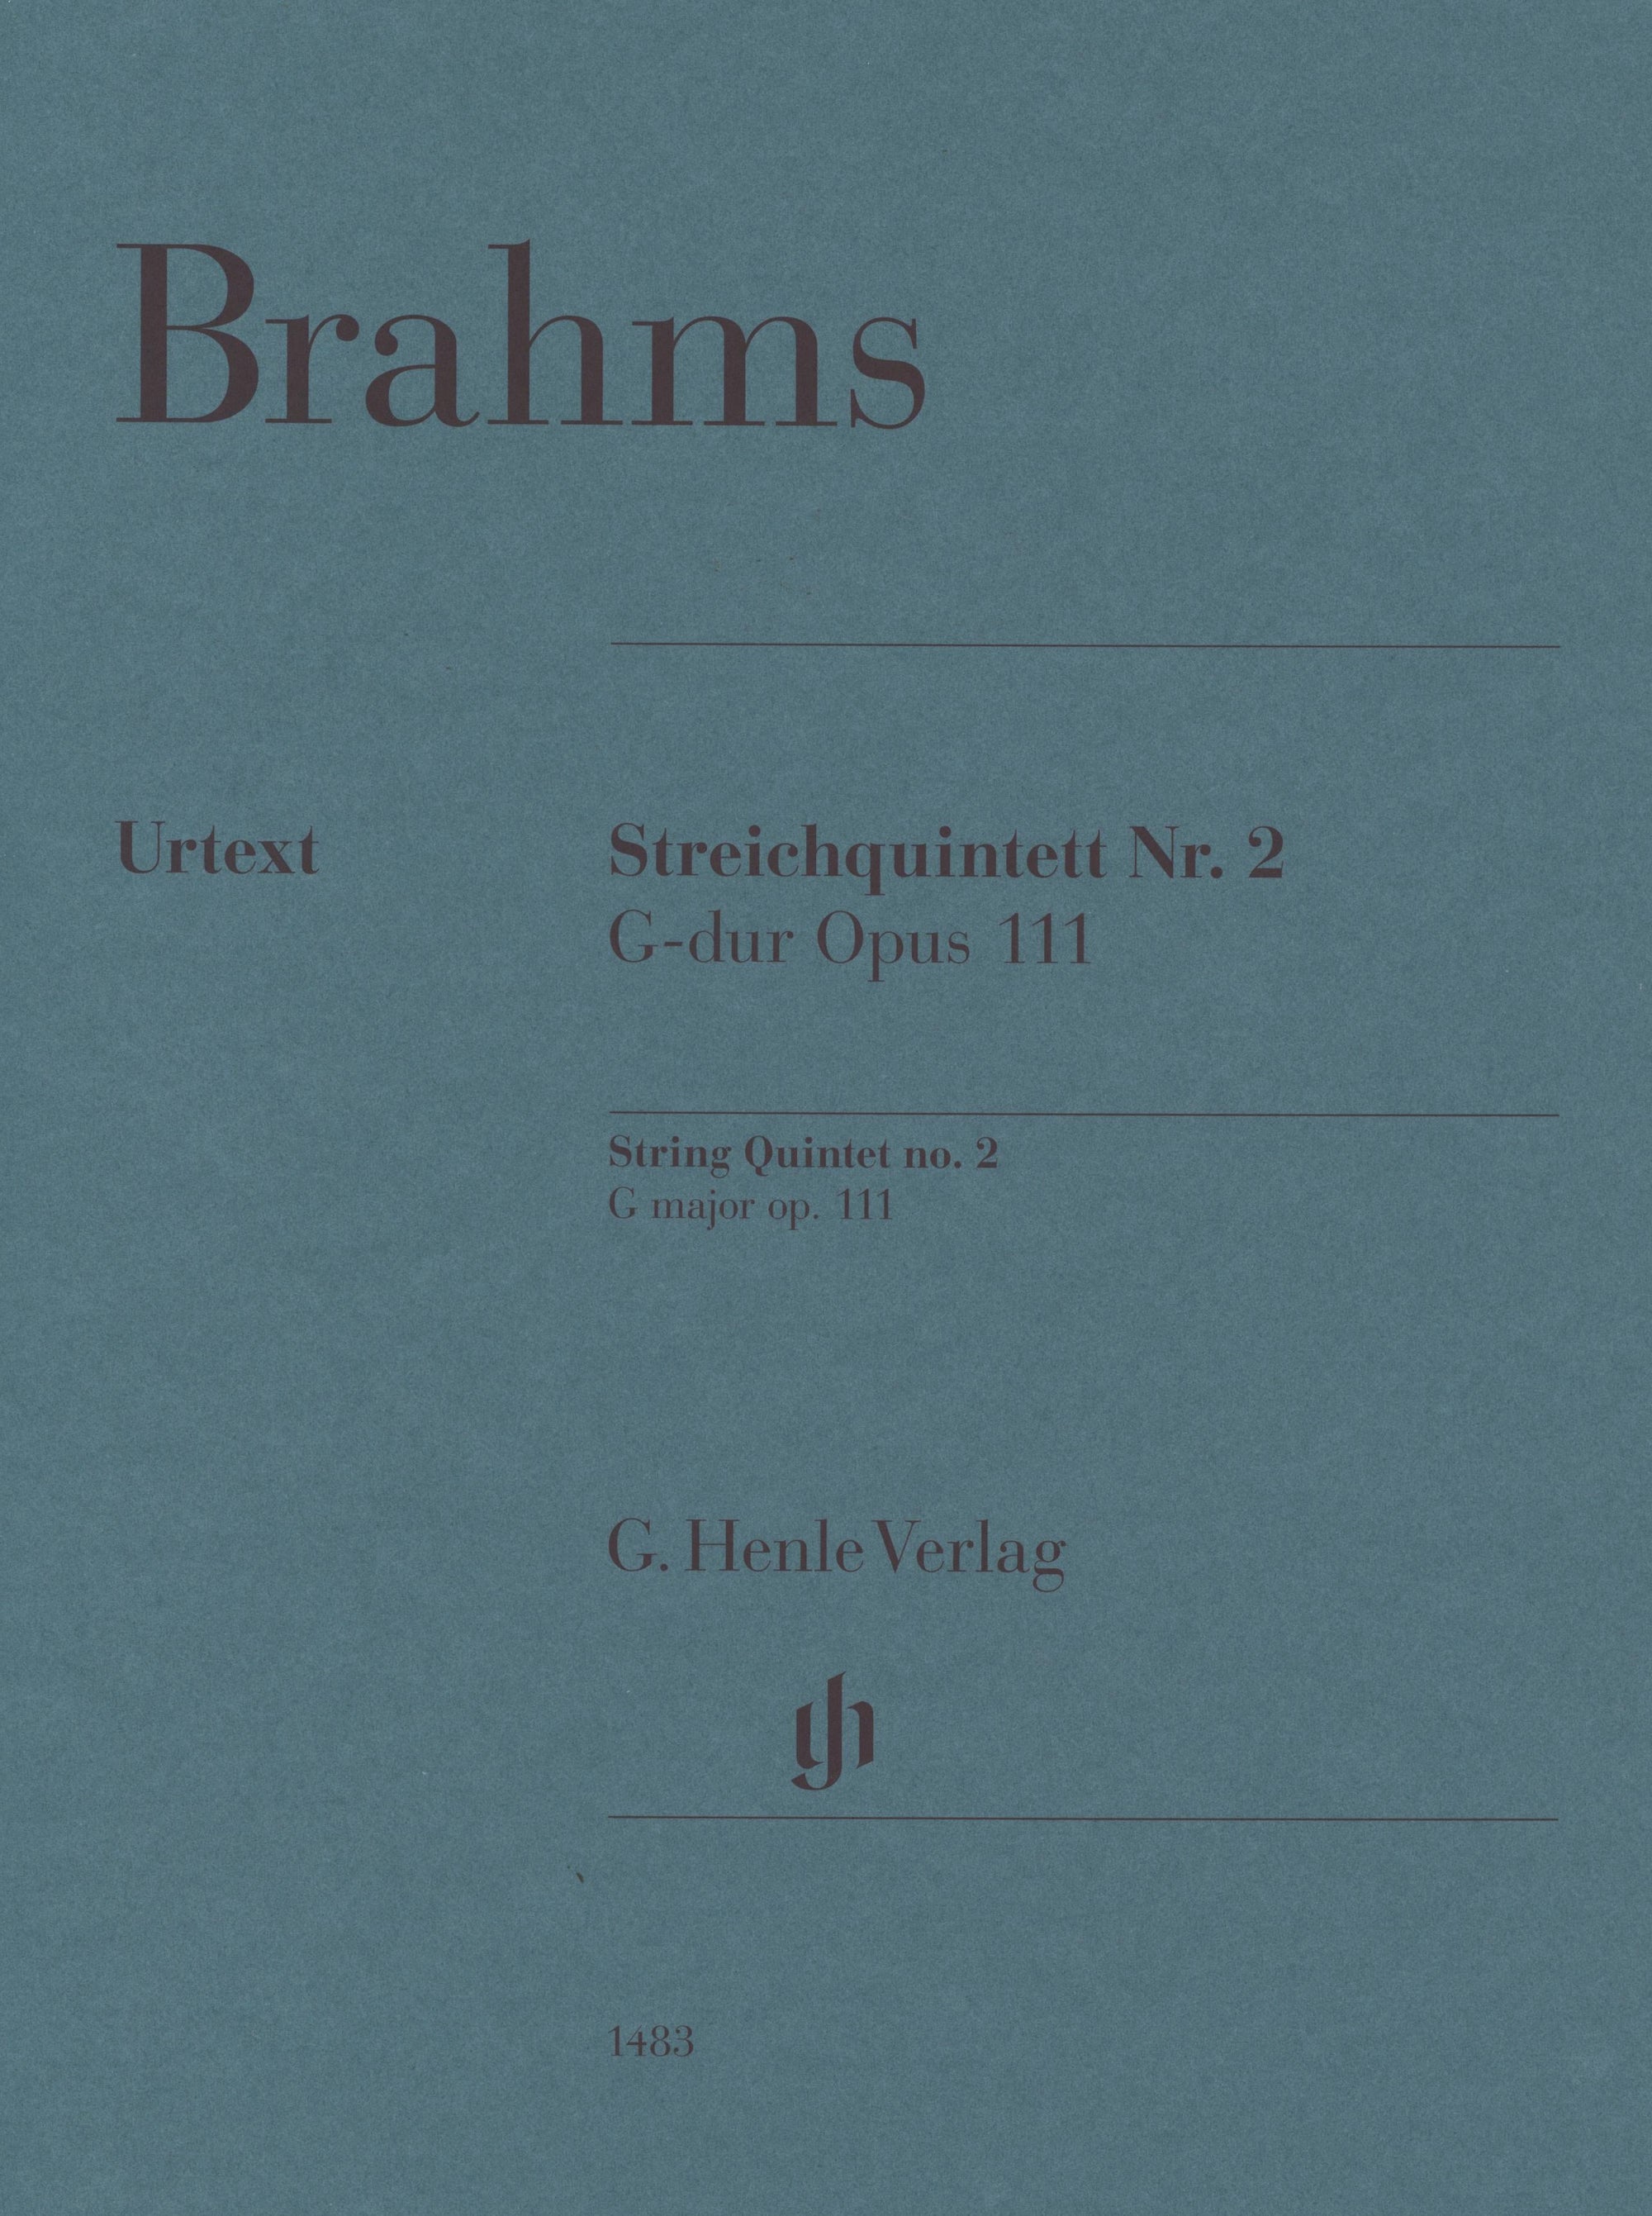 Brahms: String Quintet No. 2 in G Major, Op. 111